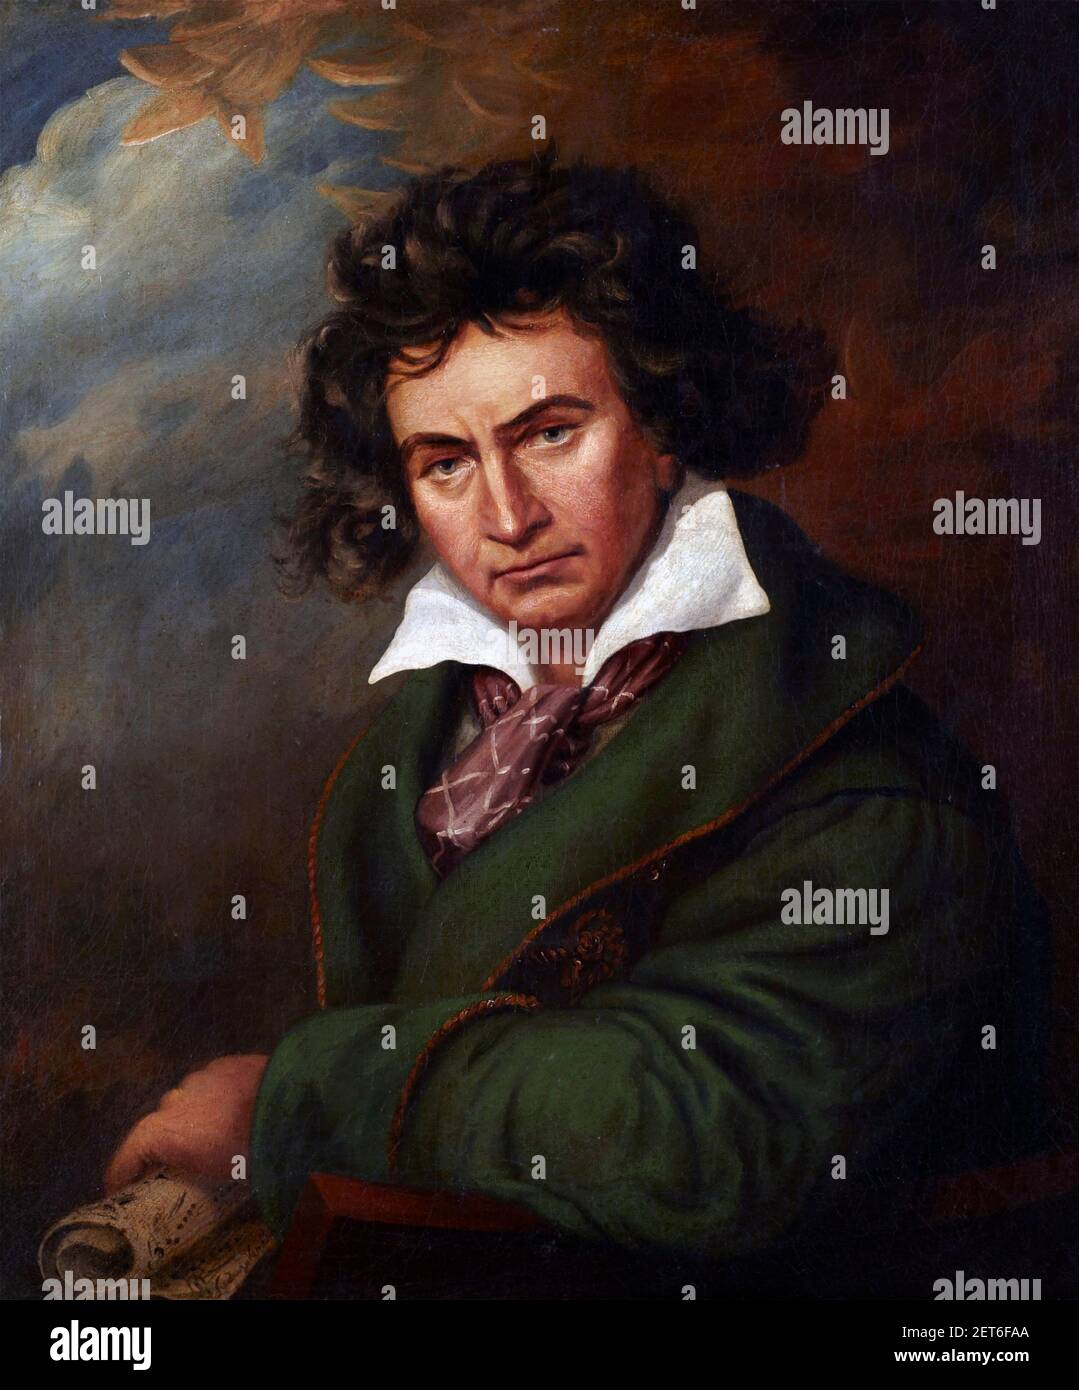 Beethoven; Ritratto del compositore tedesco Ludwig van Beethoven (1770-1827) dipinto nello stile di Joseph Karl Stieler, dopo il 1819 Foto Stock